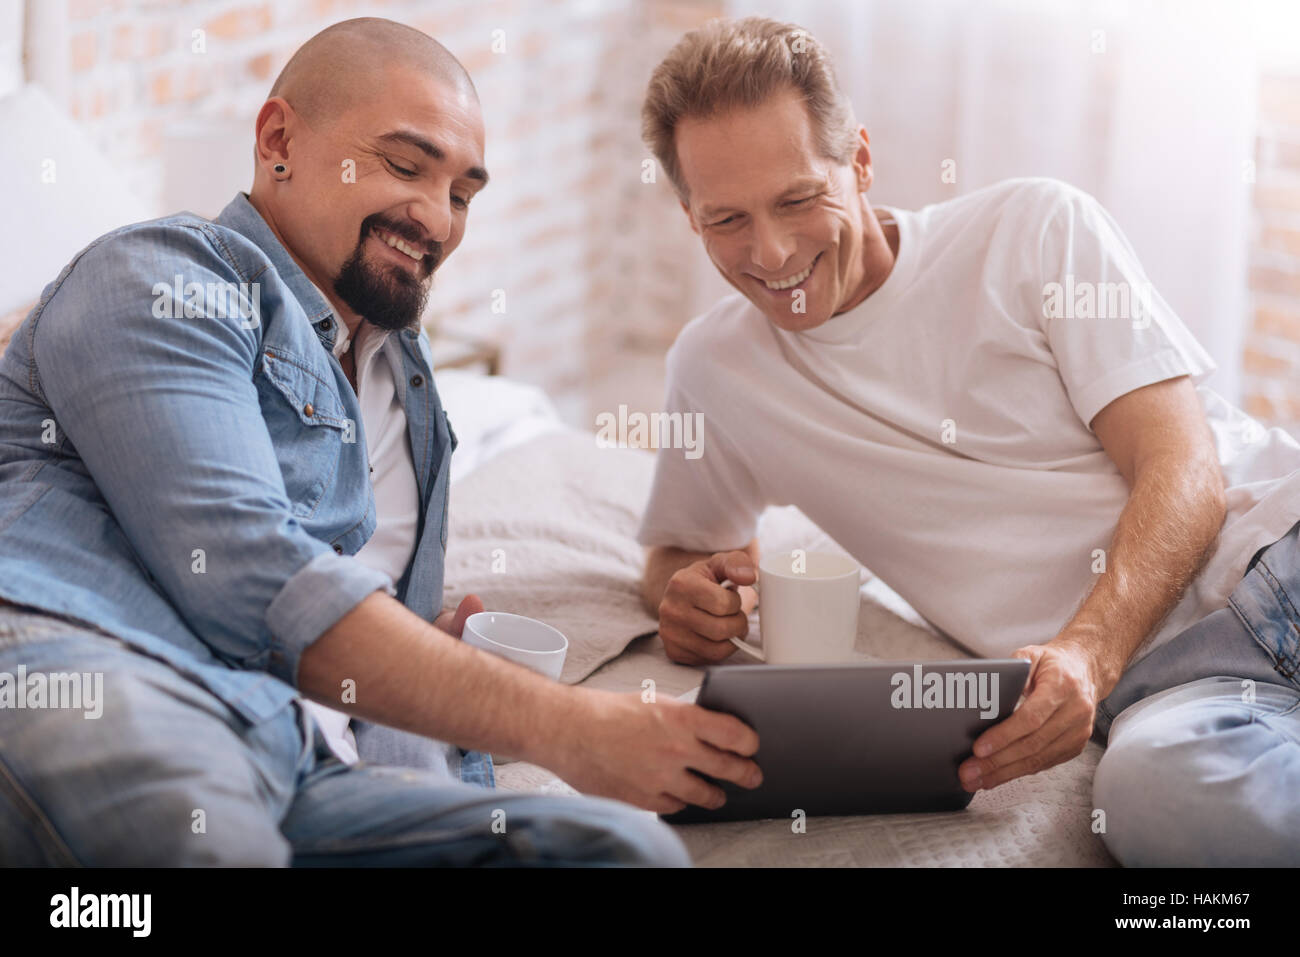 Glückliche Schwule Paar Auf Dem Bett Liegend Und Spaß Stockfotografie Alamy